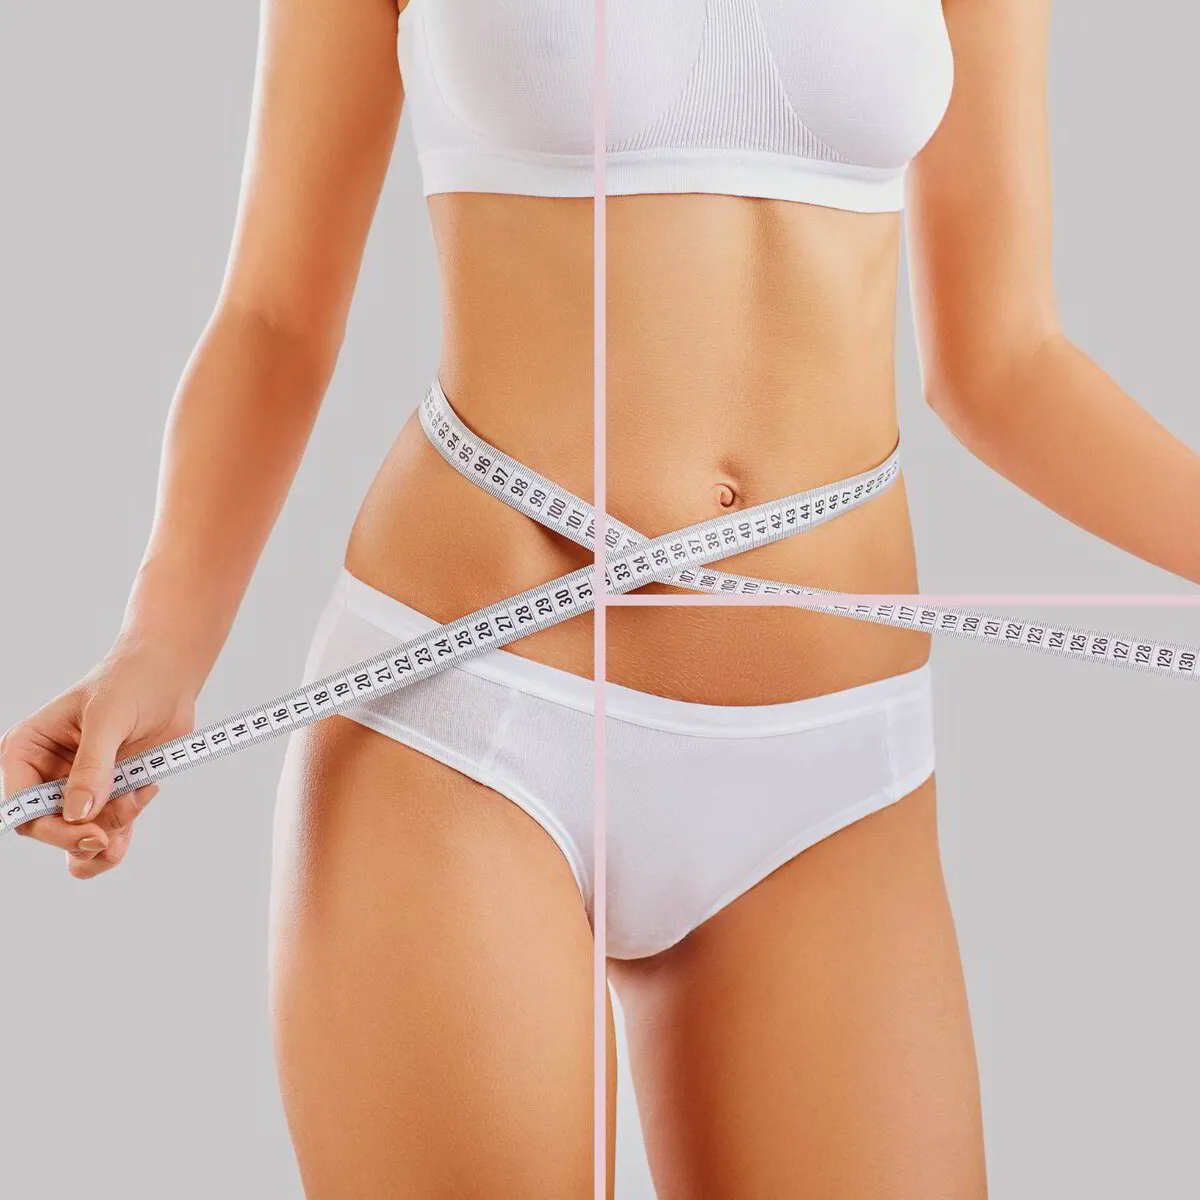 Mujer midiéndose abdomen